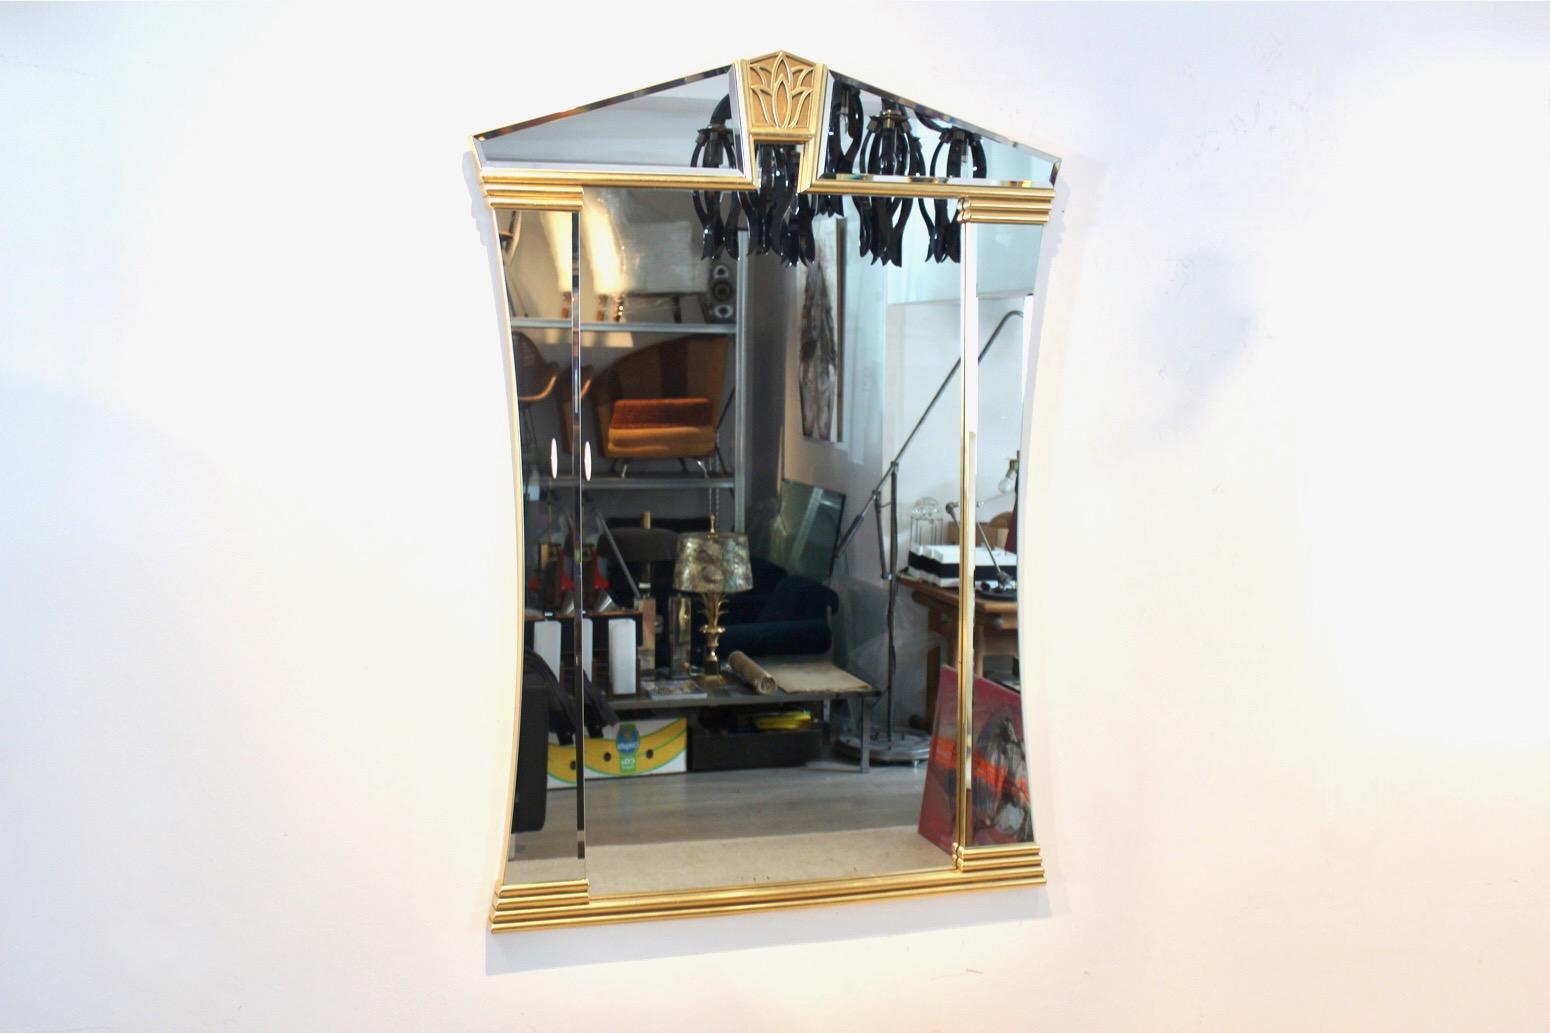 Raffinierter Spiegel aus Messing, entworfen und hergestellt von der belgischen Firma Deknudt.  Der Spiegel ist optisch auffällig mit schönen verspiegelten Paneelen auf allen Seiten und einer einzigartigen dekorativen eingearbeiteten Skulptur von